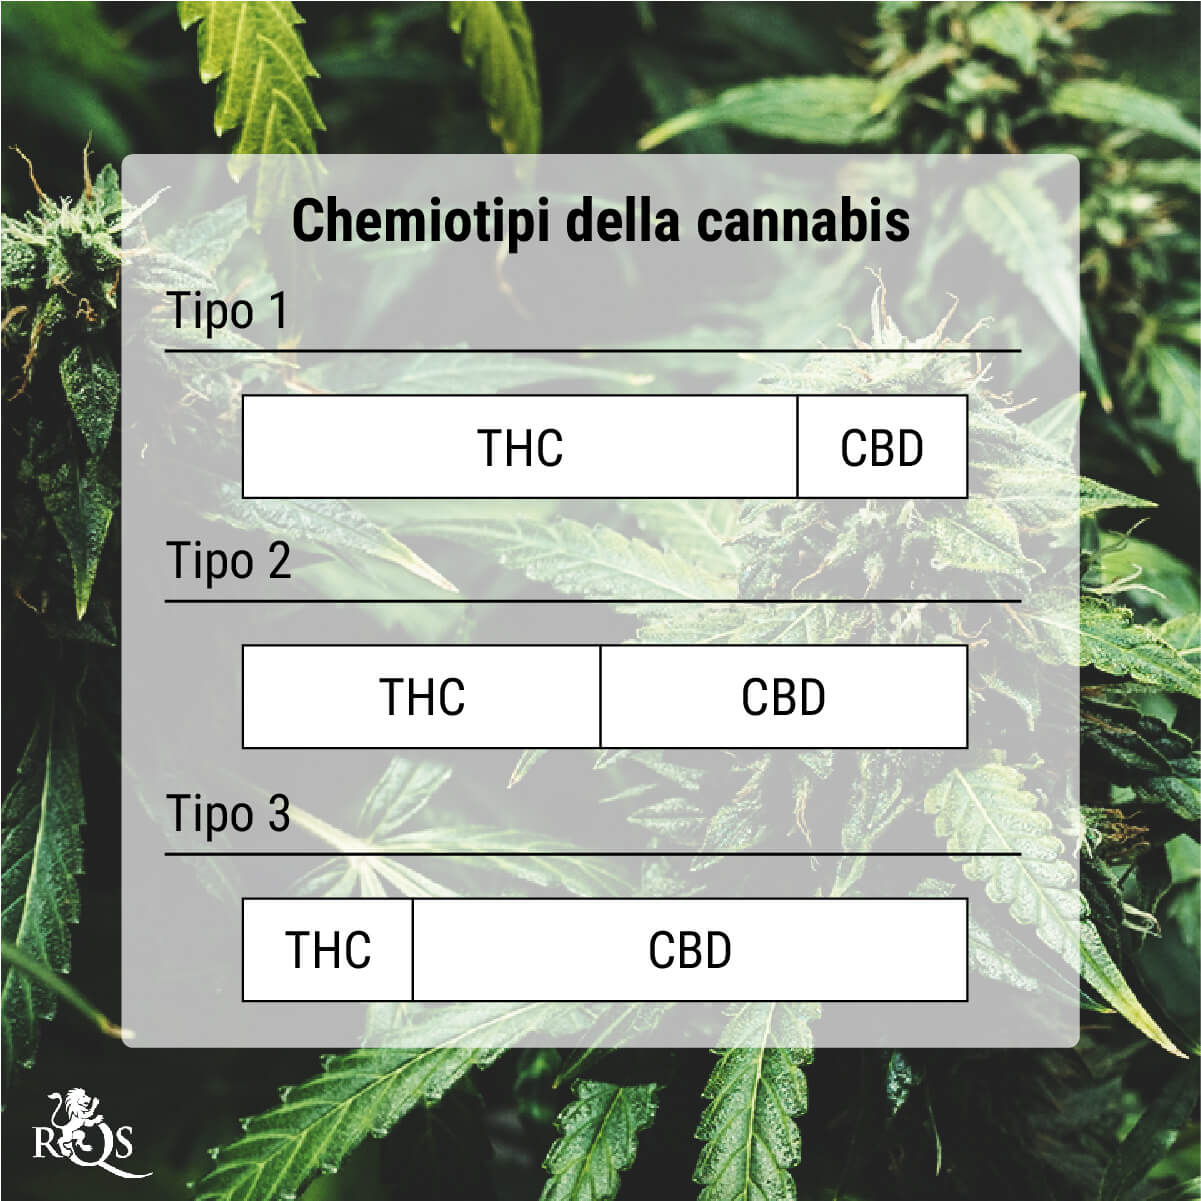 Cosa sono i chemiotipi della cannabis?